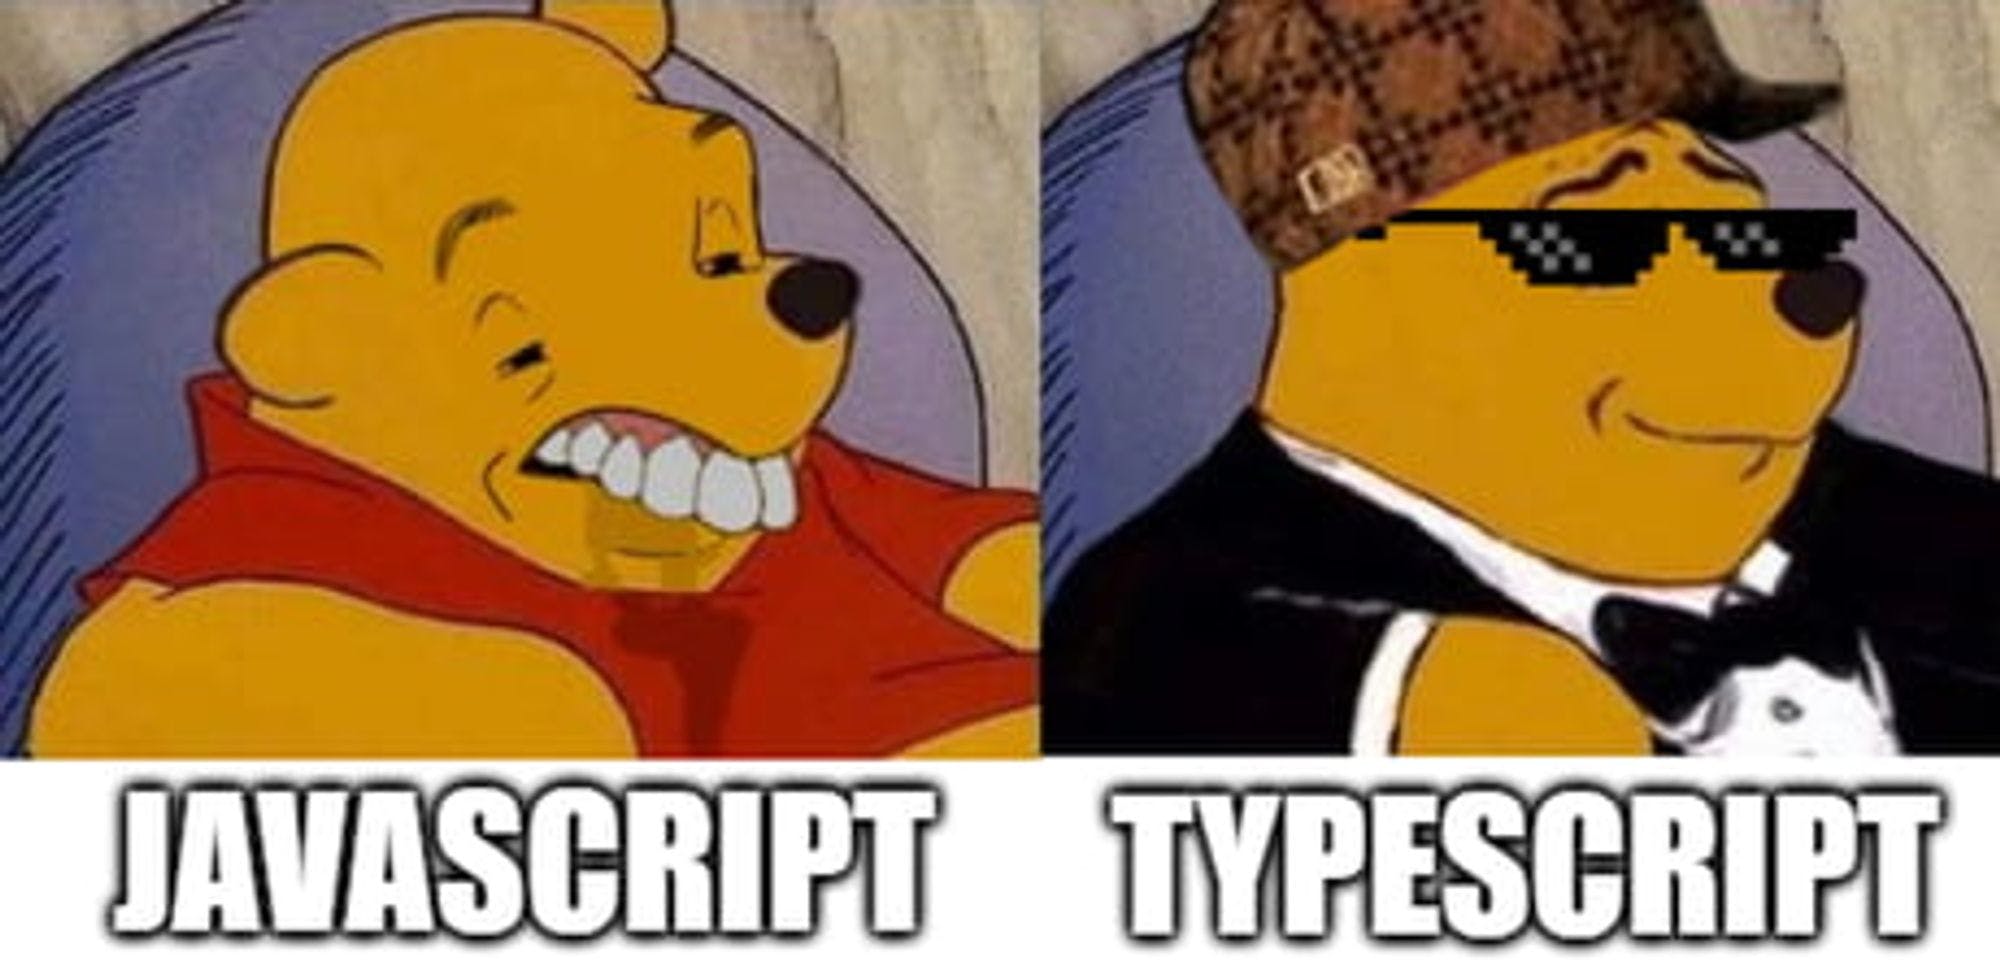 TypeScript를 사용하는 이유